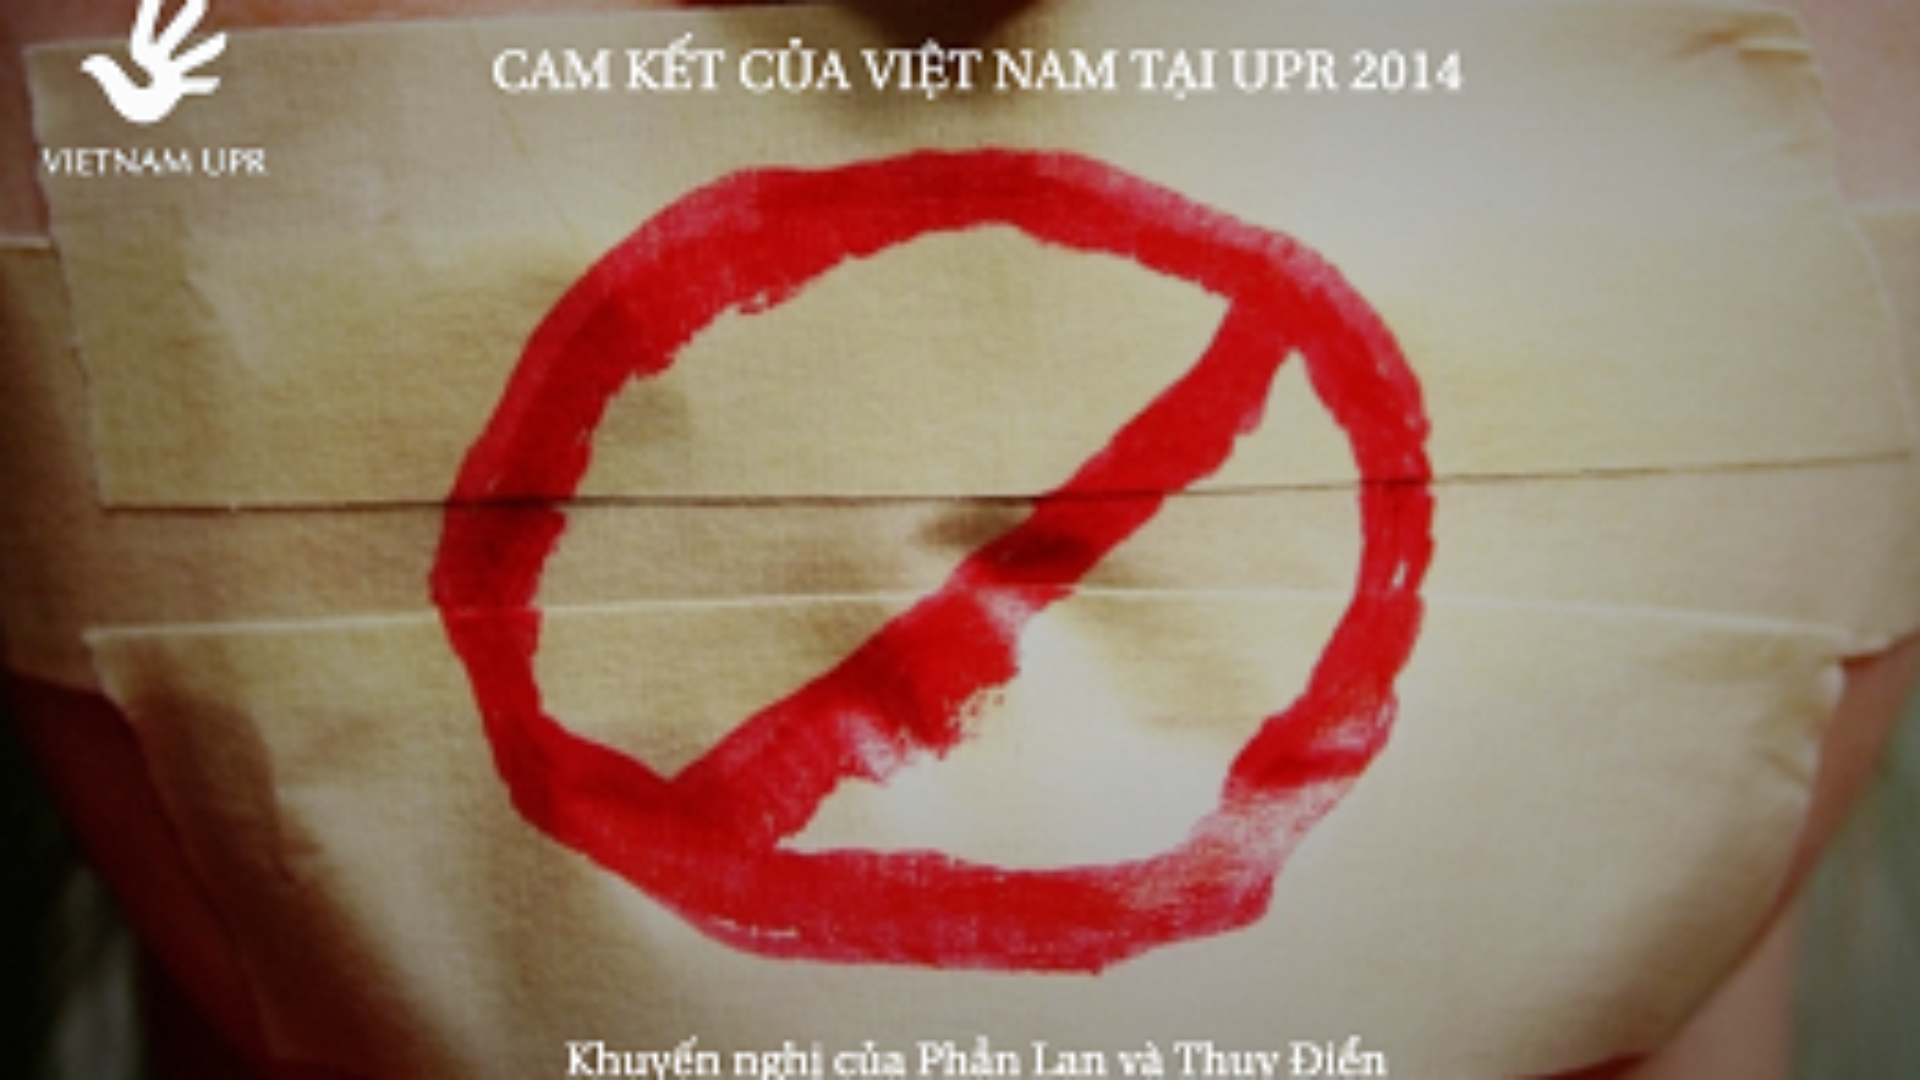 Bạn có biết: Cam kết của Việt Nam về Đảm bảo tự do ngôn luận tại UPR 2014?